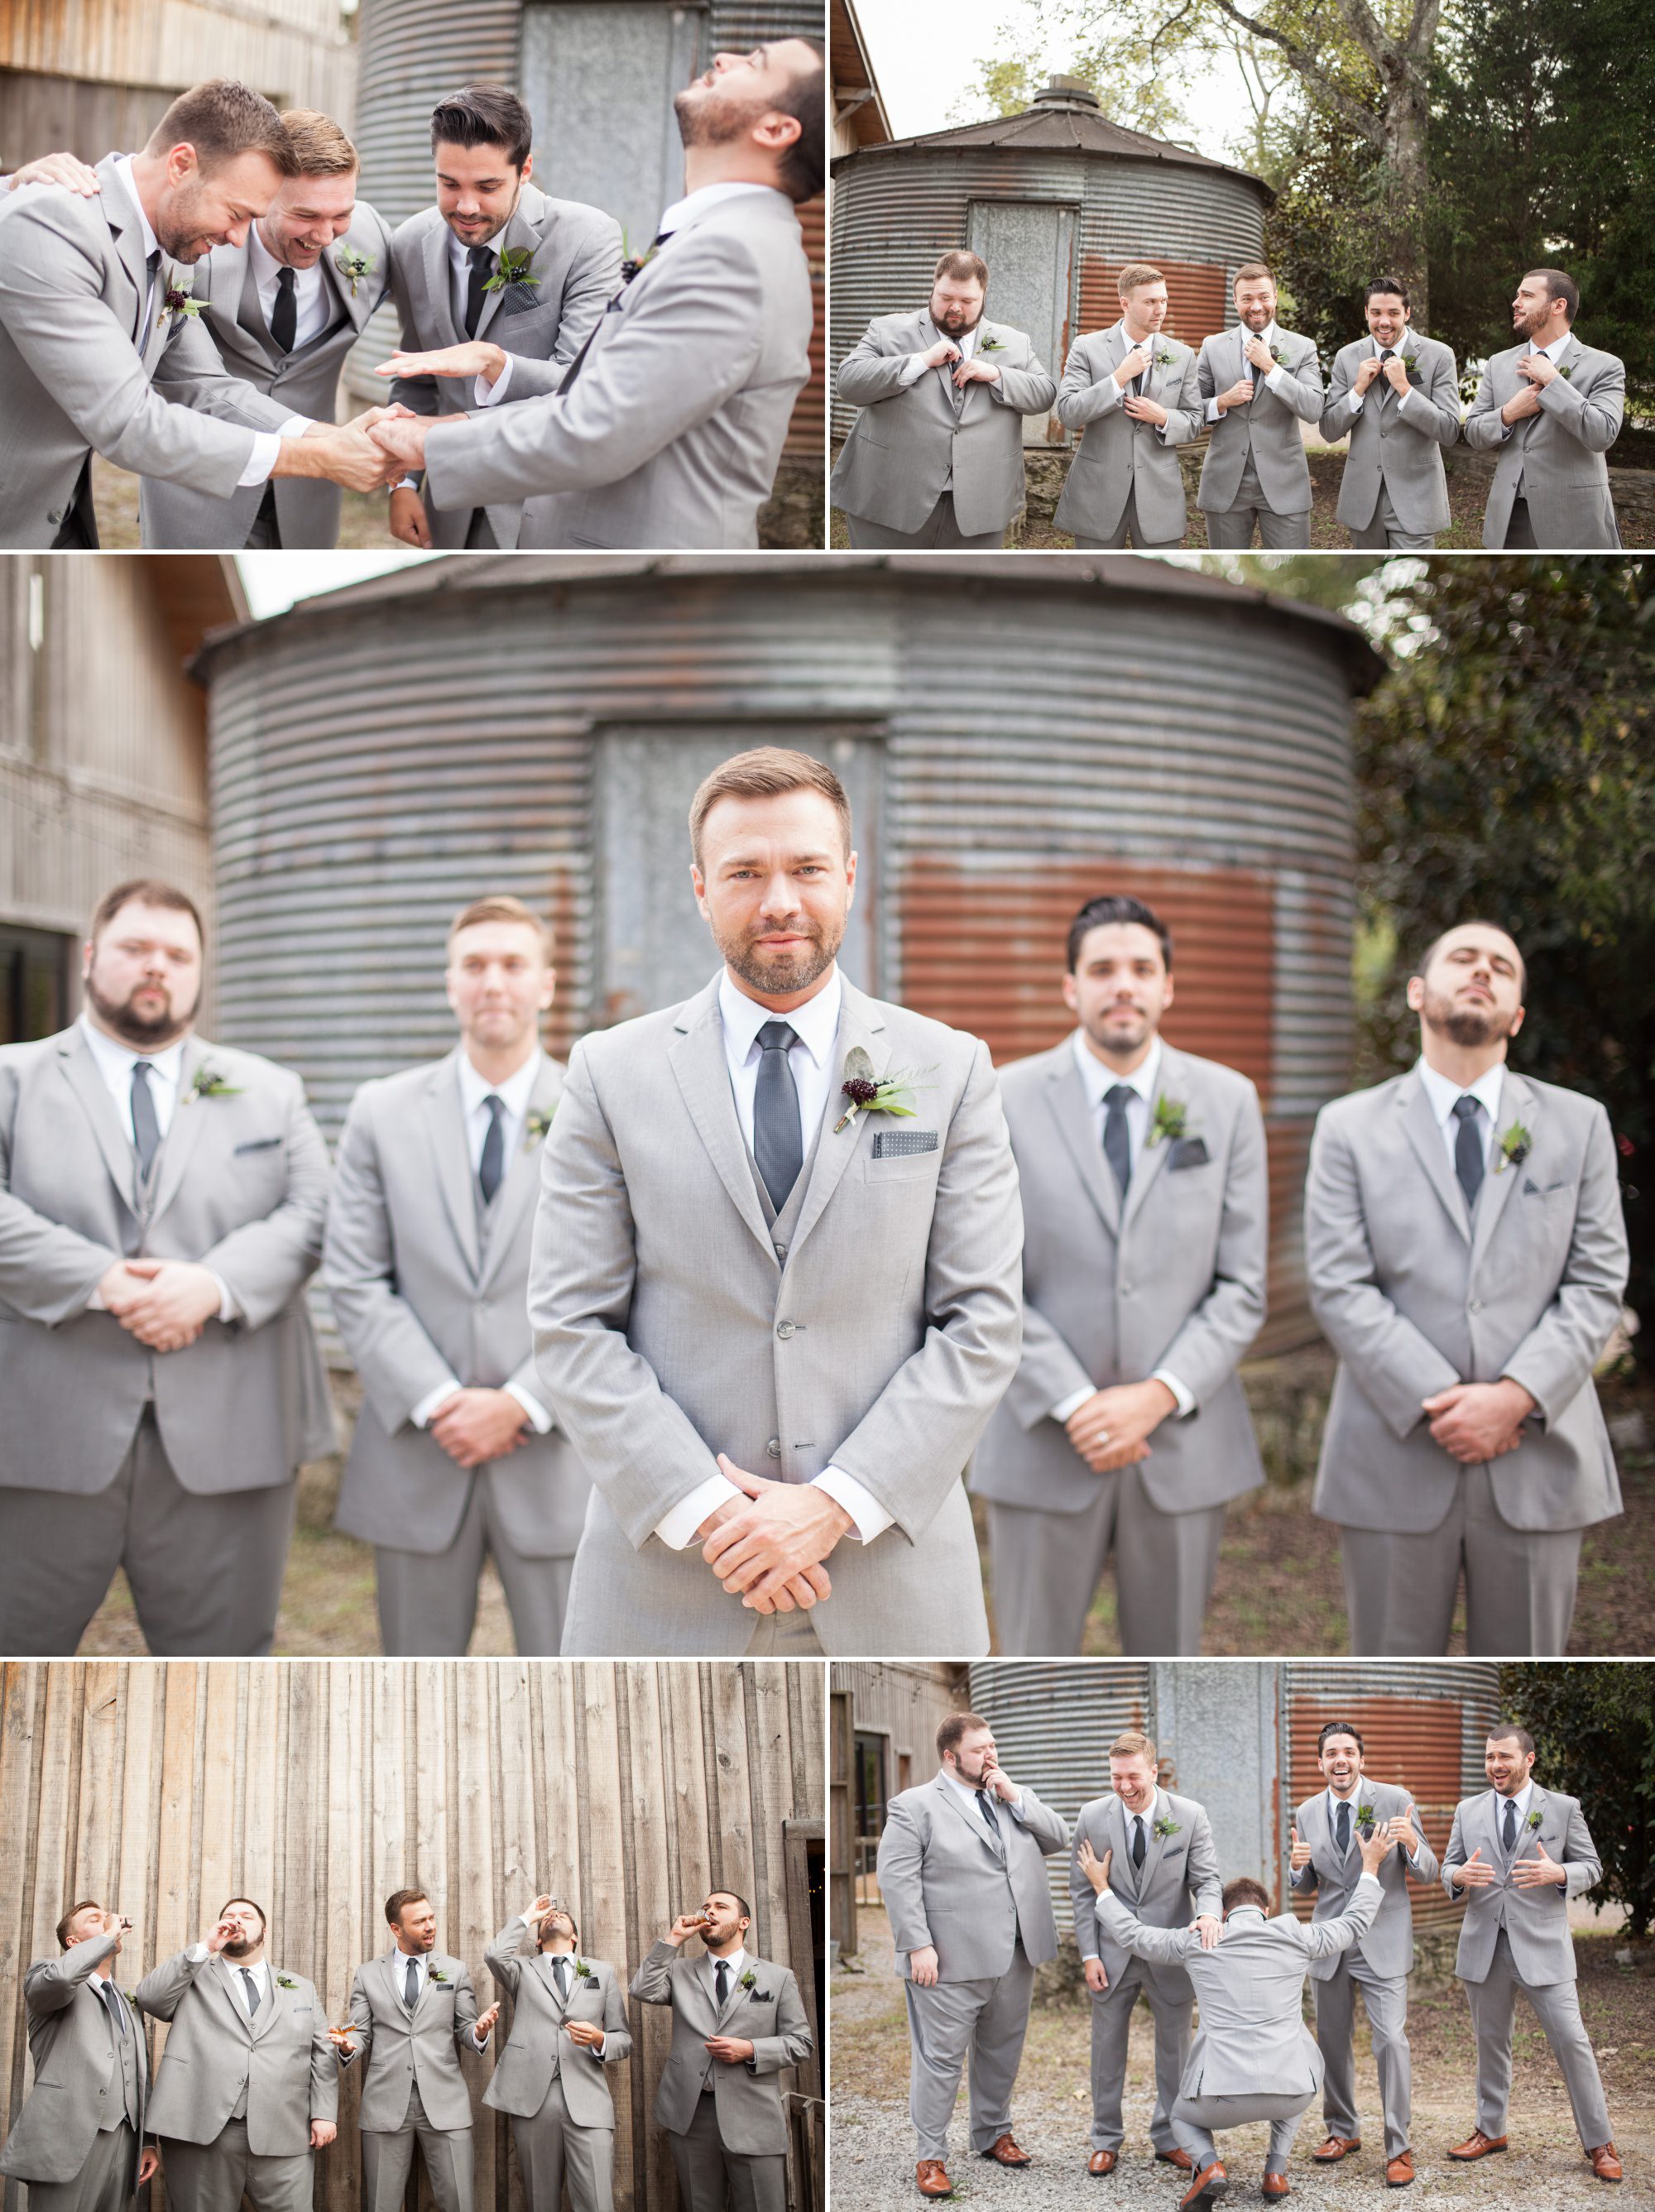 Groomsmen photos before wedding ceremony photography at Green Door Gourmet in Nashville, TN